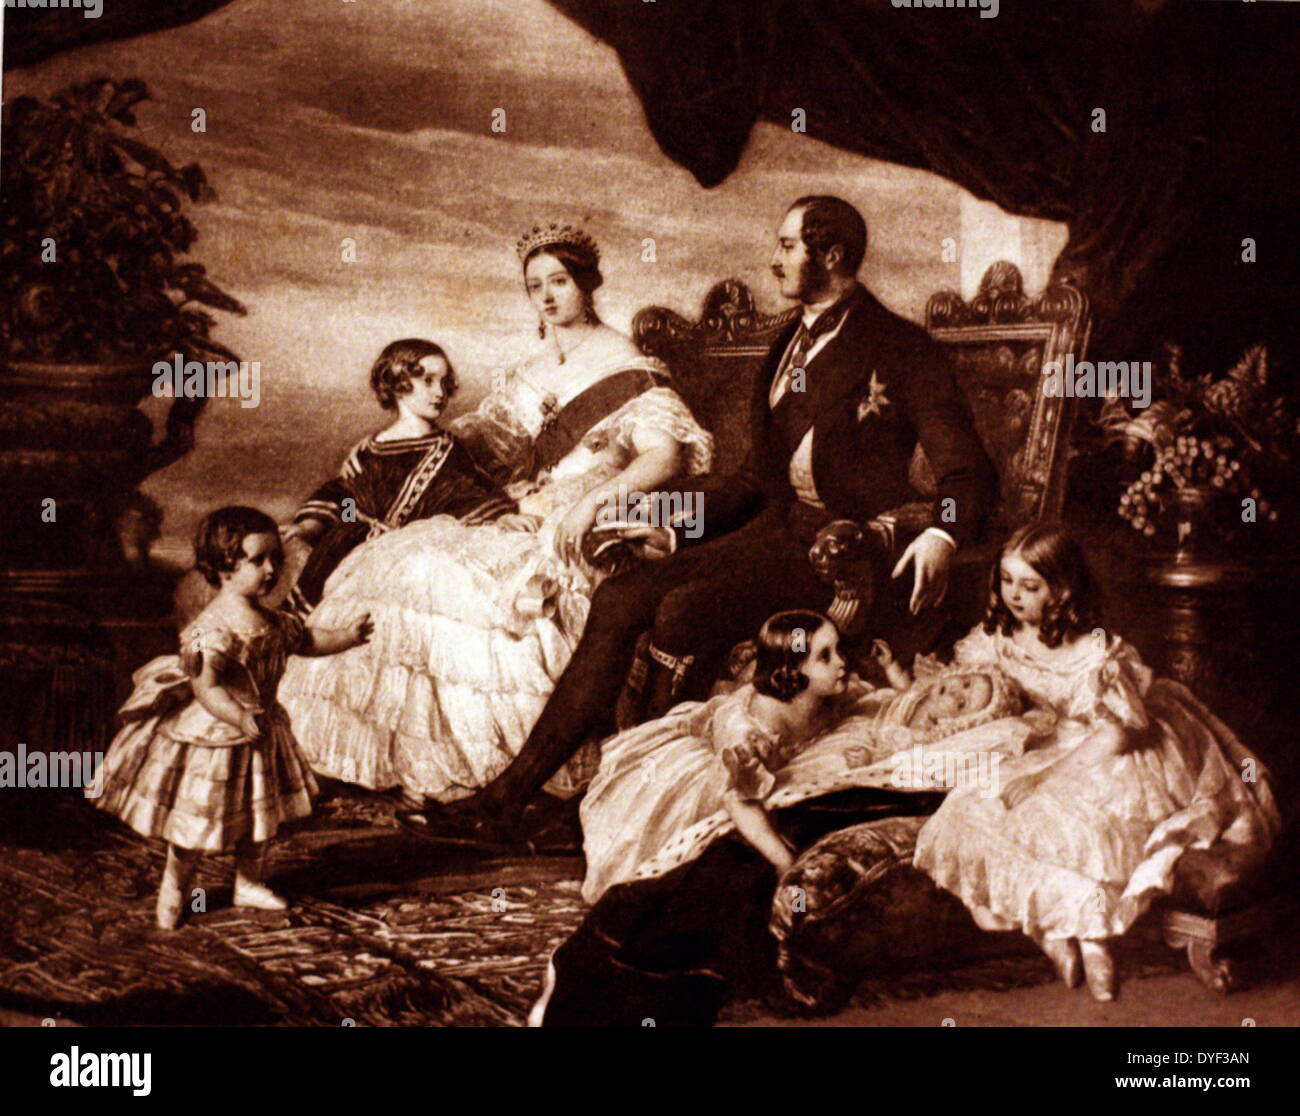 Famille de la reine Victoria, par Franz Xaver Winterhalter. Huile sur toile, vers 1846. Montre la Reine, le Prince Albert, et les 5 enfants qu'ils avaient à l'époque de cette peinture. Banque D'Images